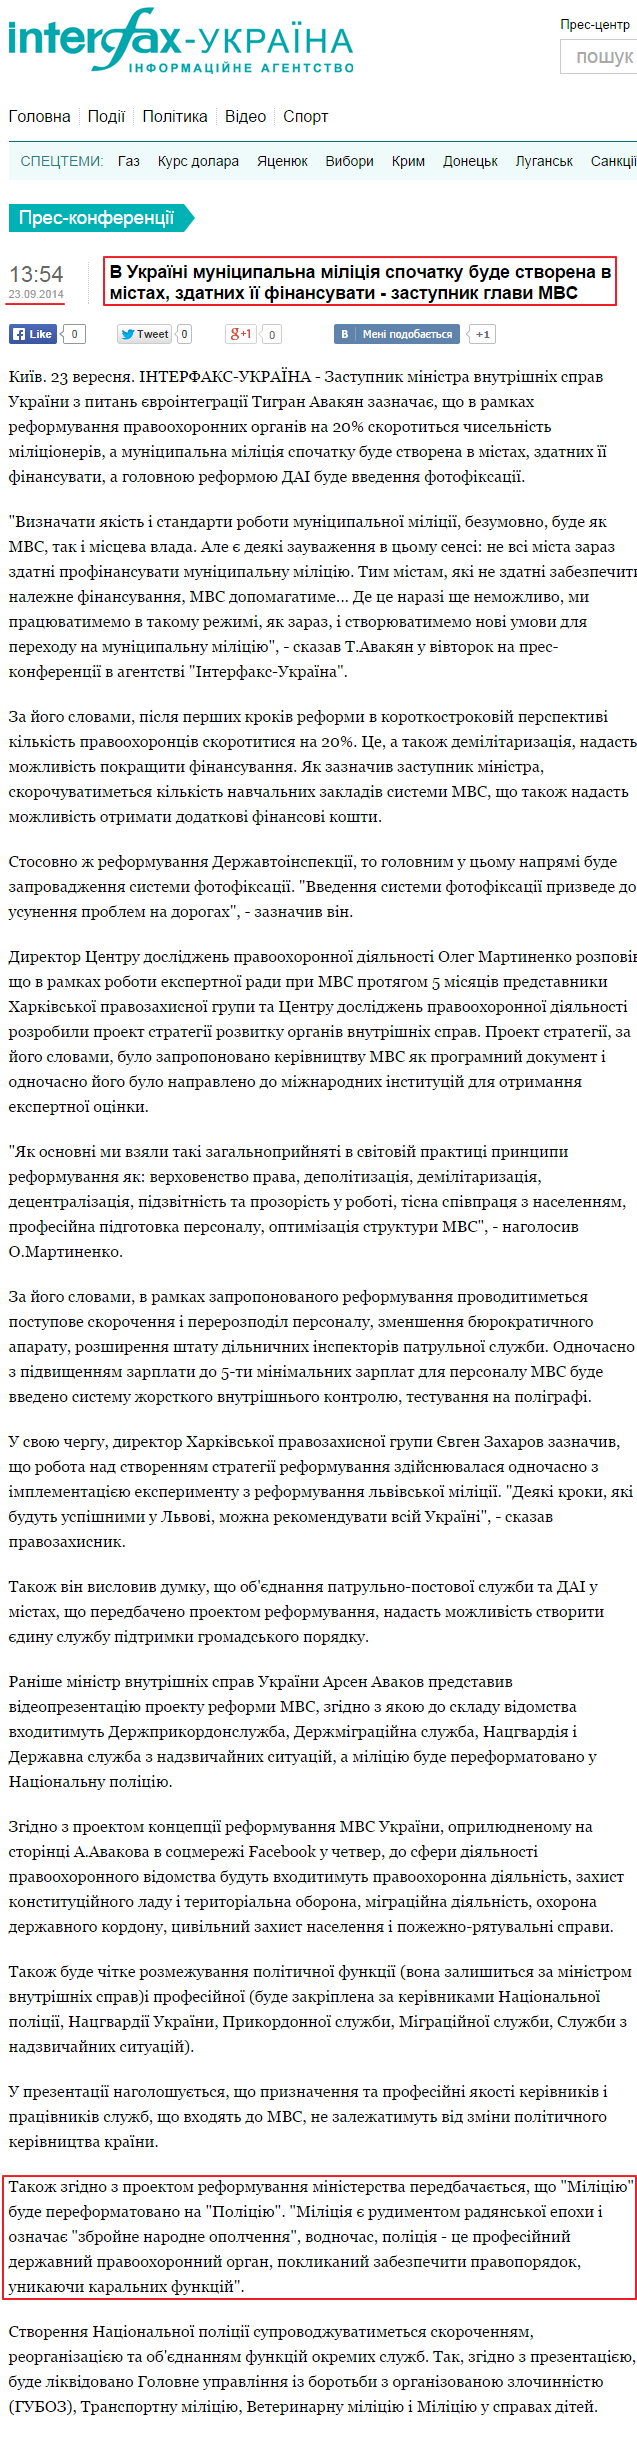 http://ua.interfax.com.ua/news/press-conference/225073.html